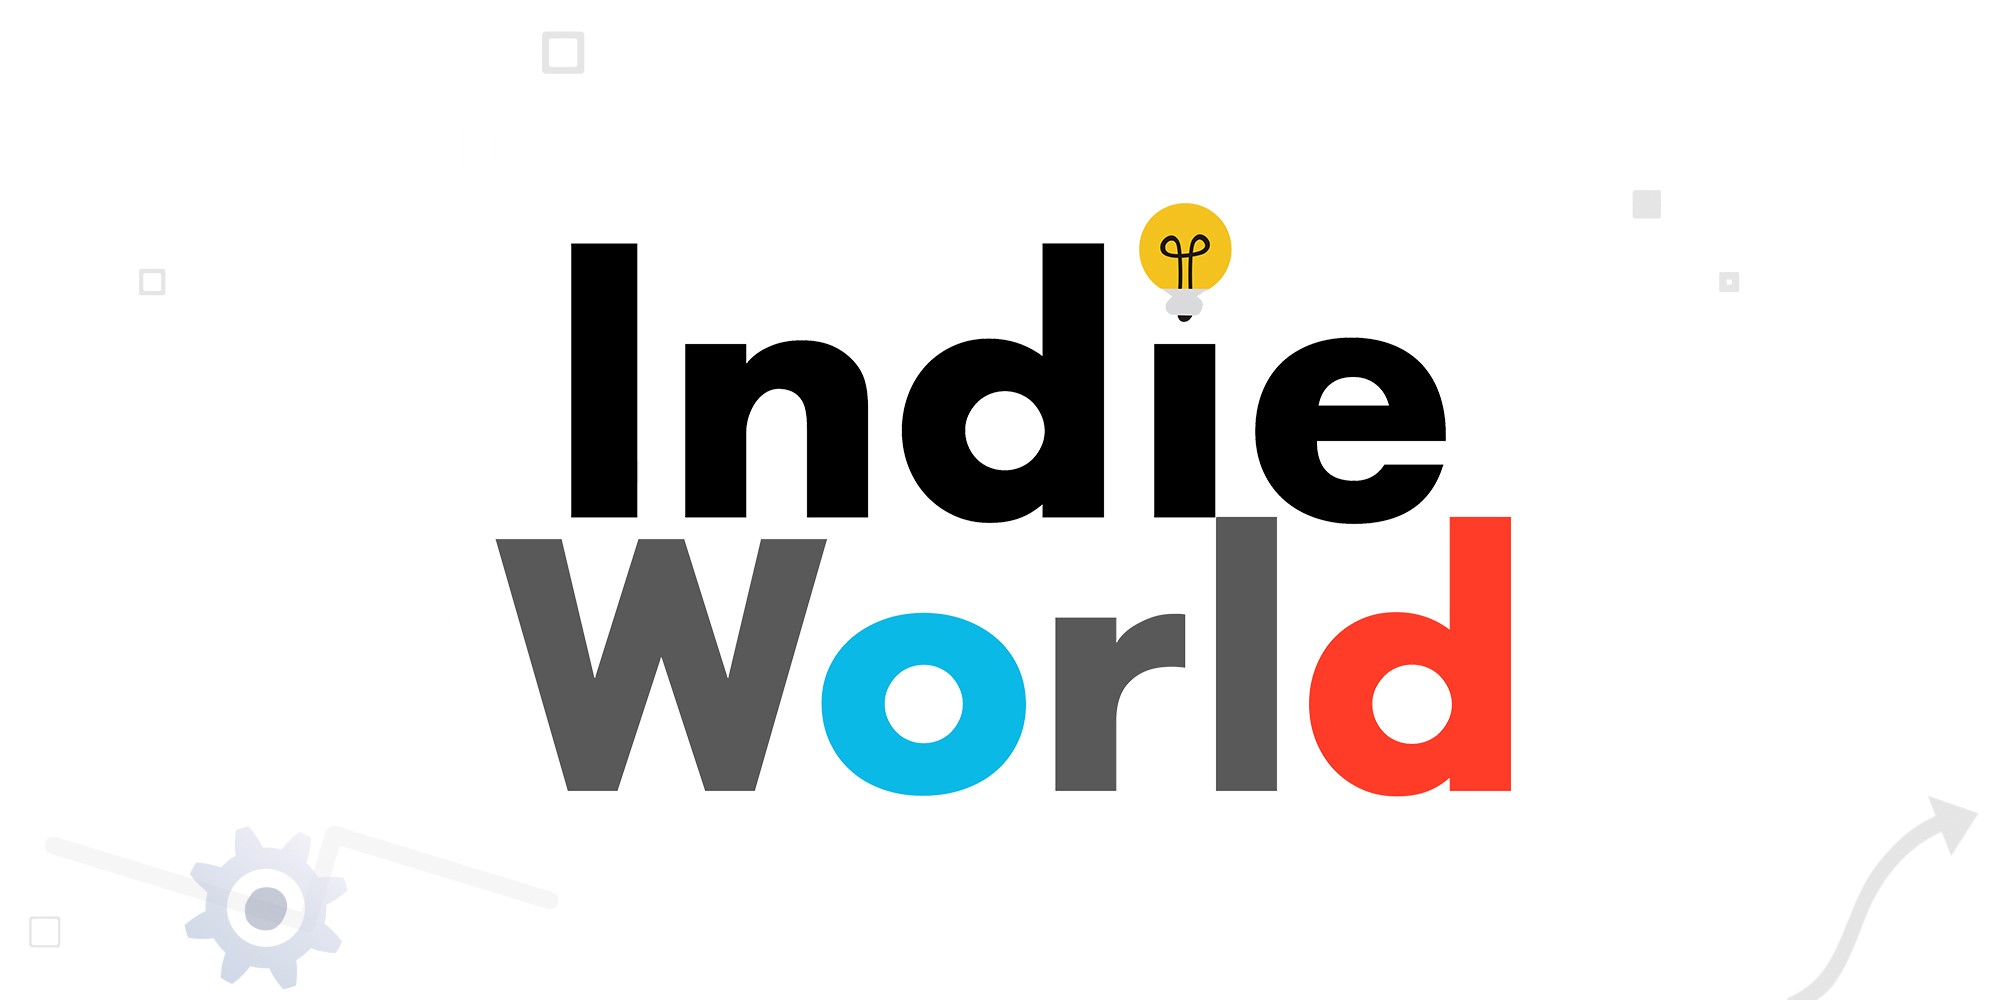 يوم الاثنين ، 19 أغسطس ، عرض تقديمي جديد لـ "Indie World" لـ Nintendo Switch الساعة 3:00 مساءً